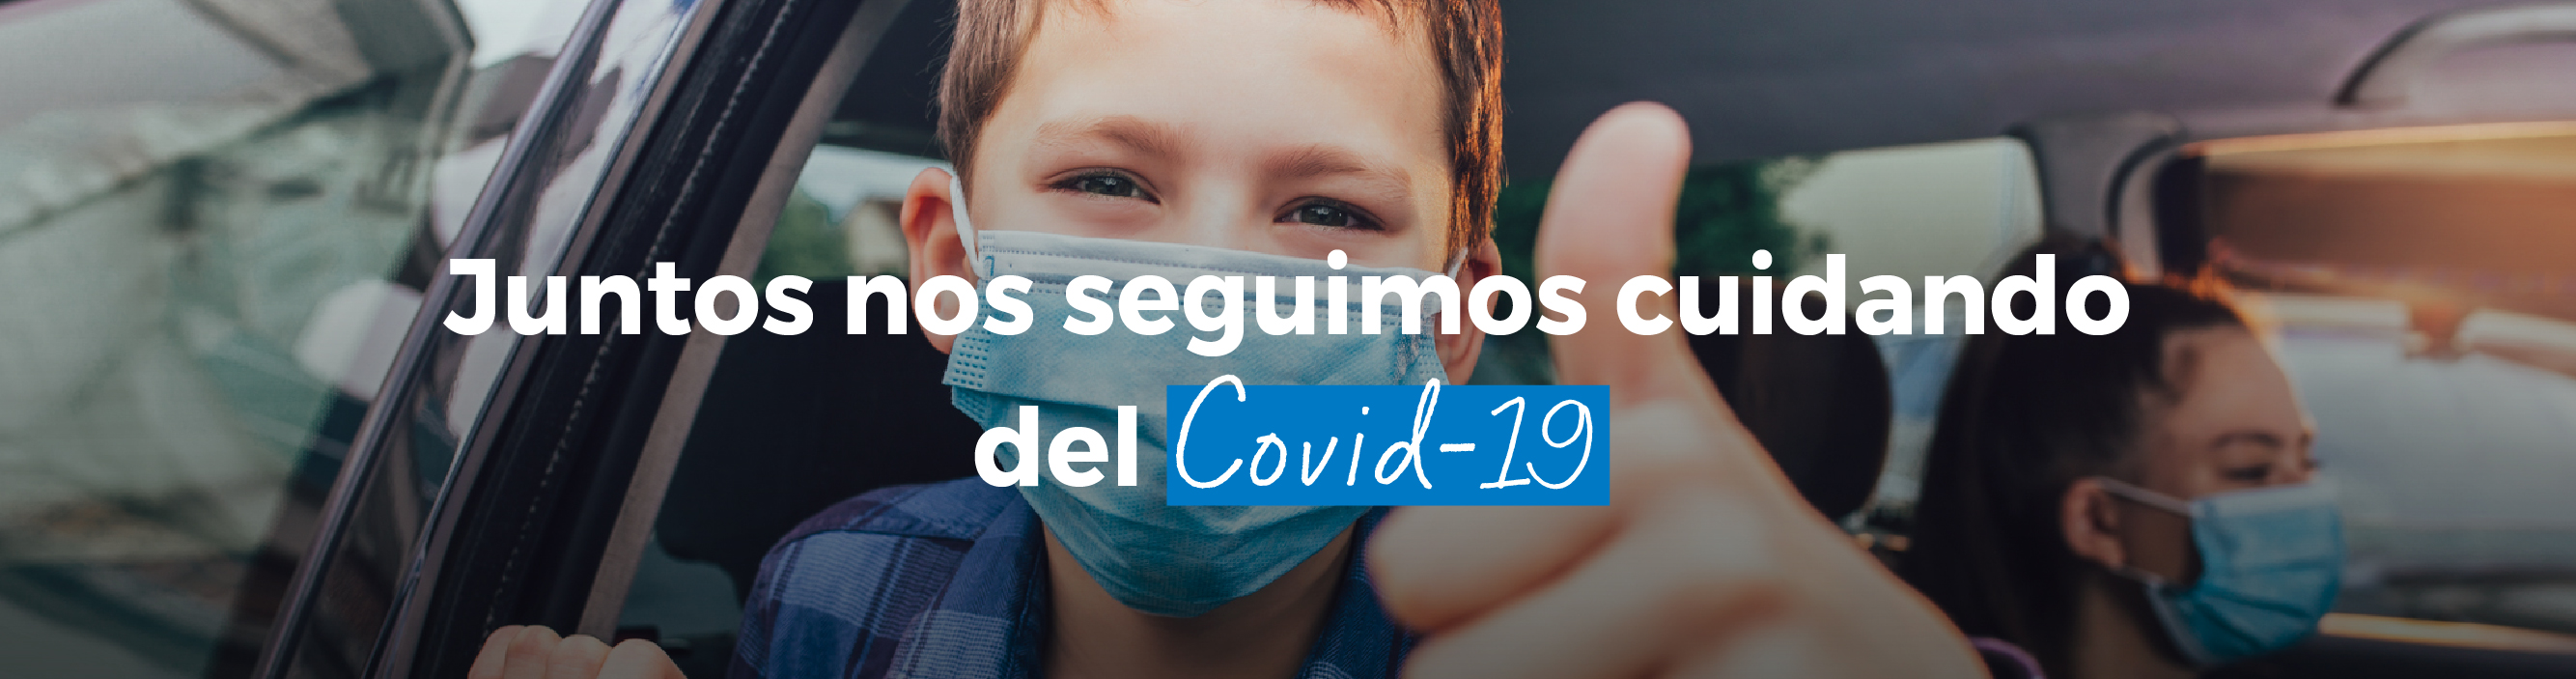 Junto nos seguimos cuidando del Covid-19 | Clínica Bupa Santiago